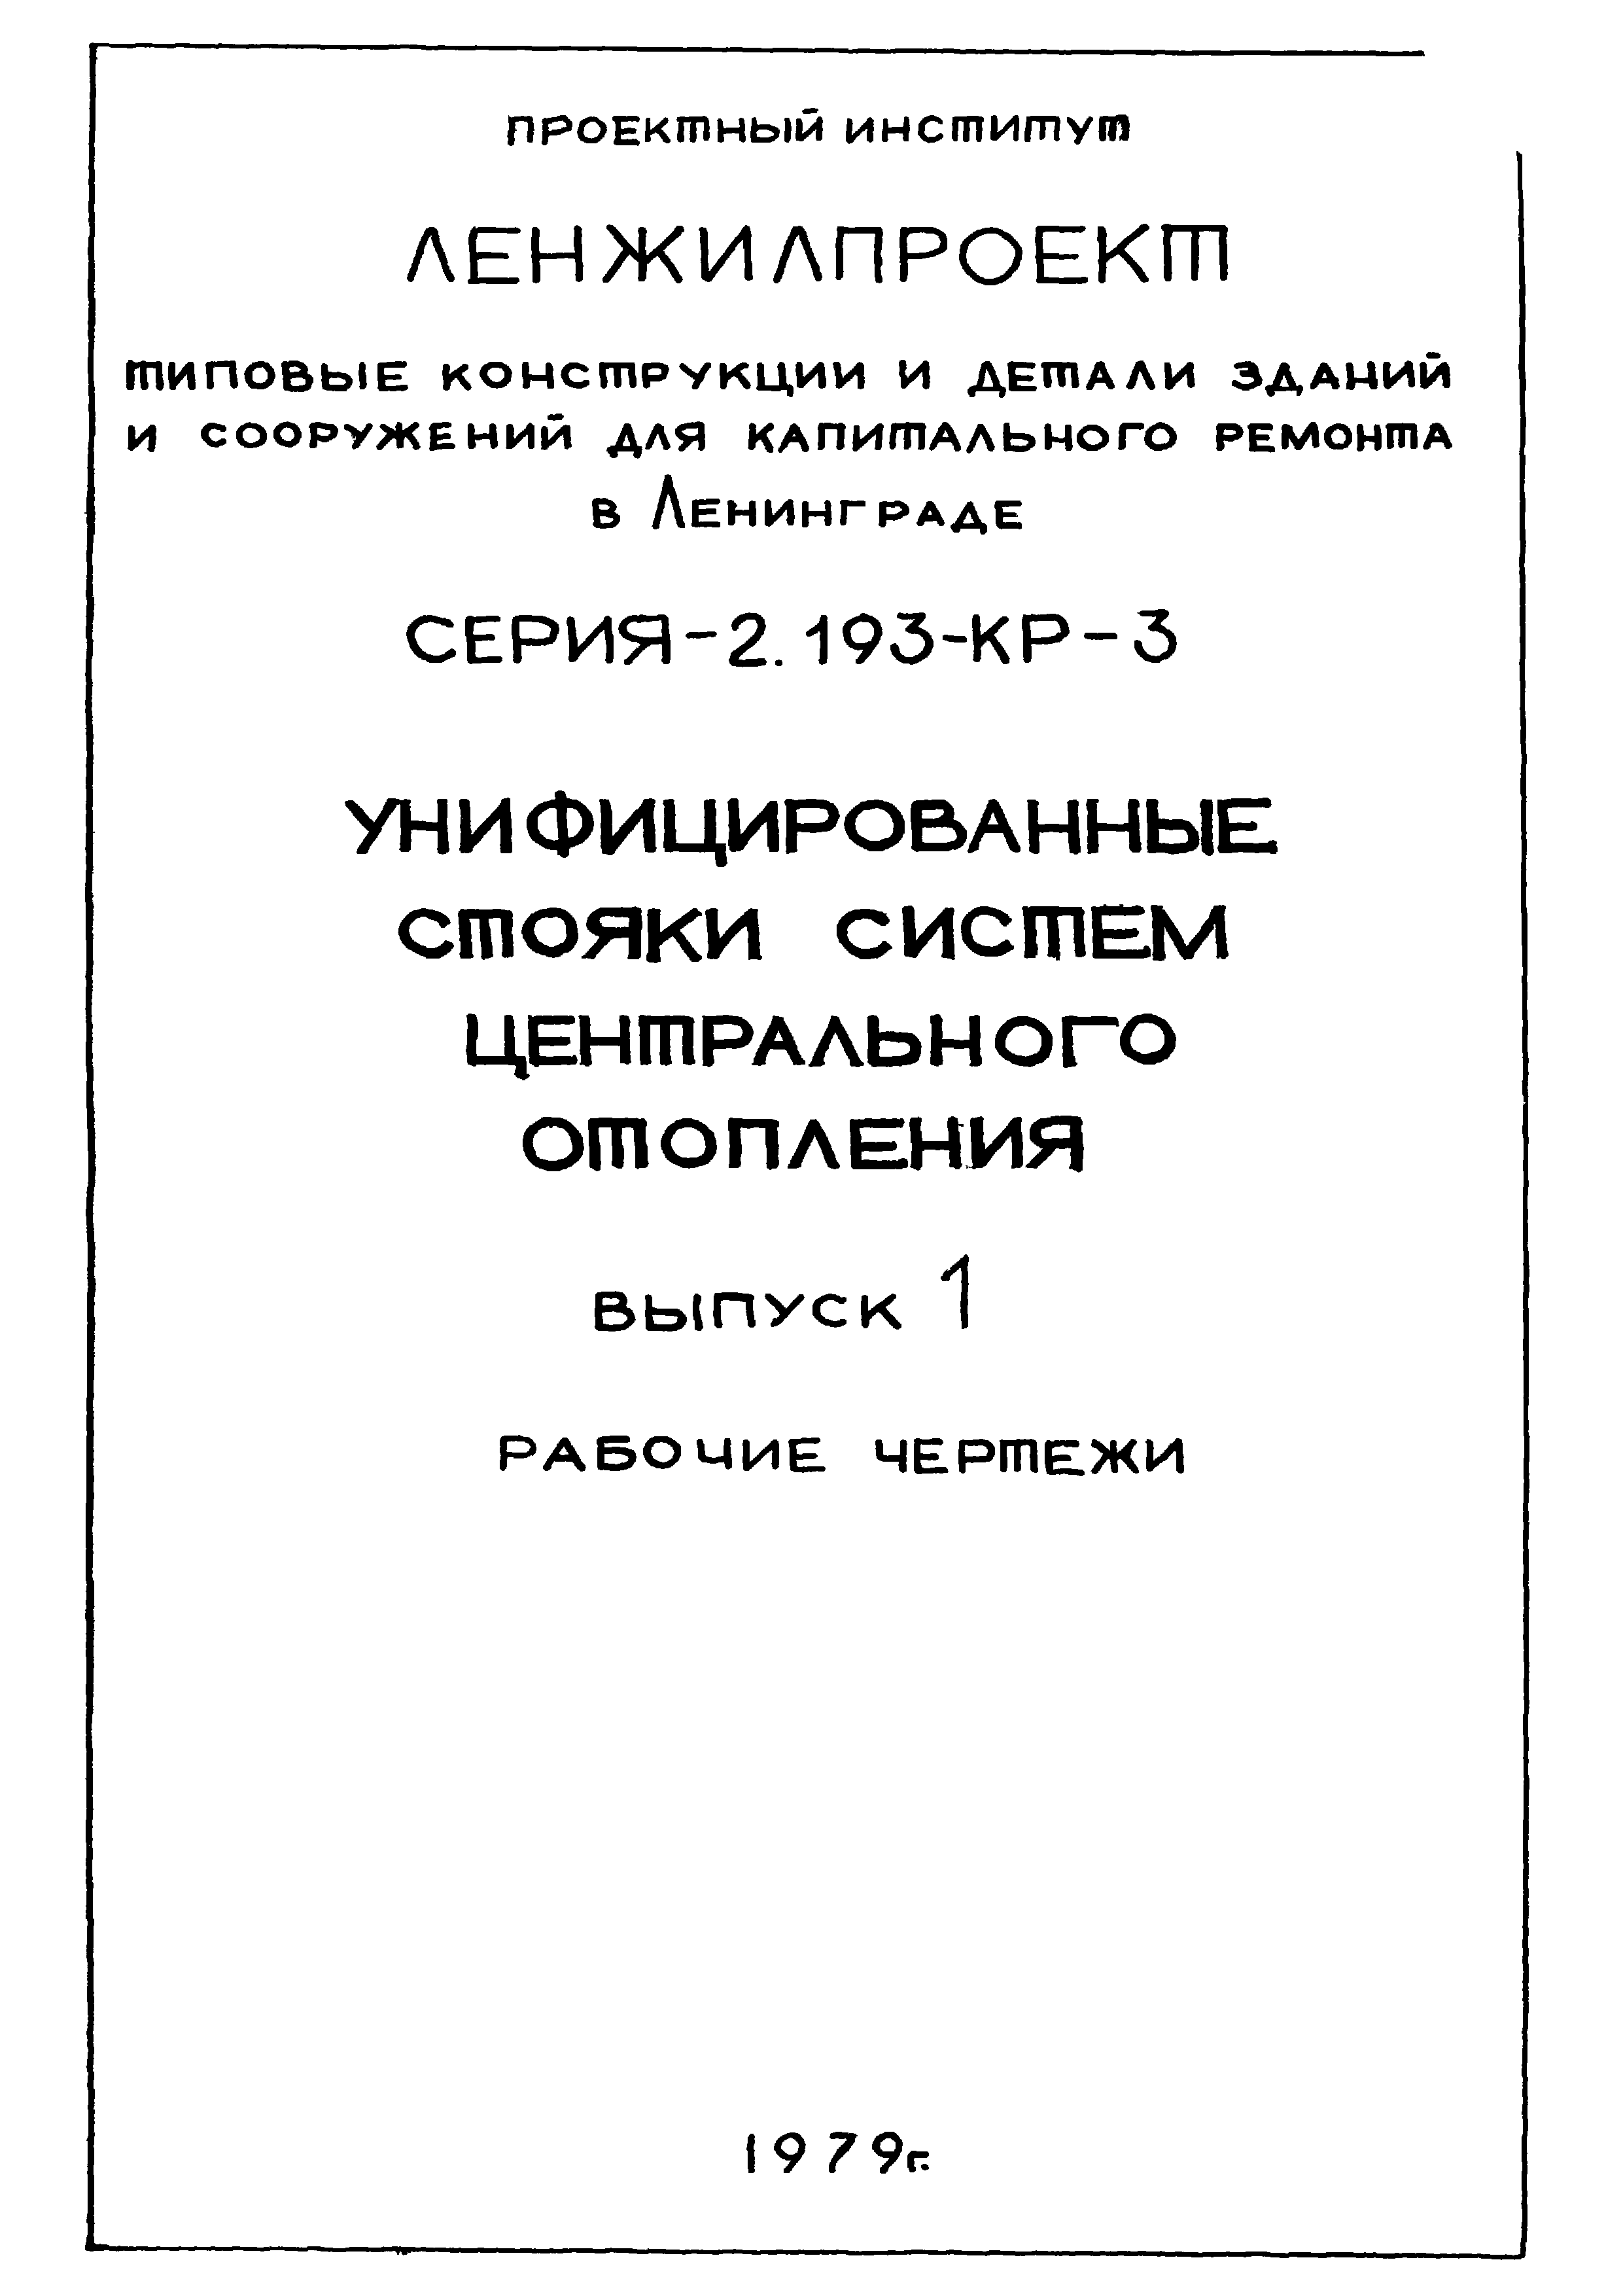 Серия 2.193-КР-3